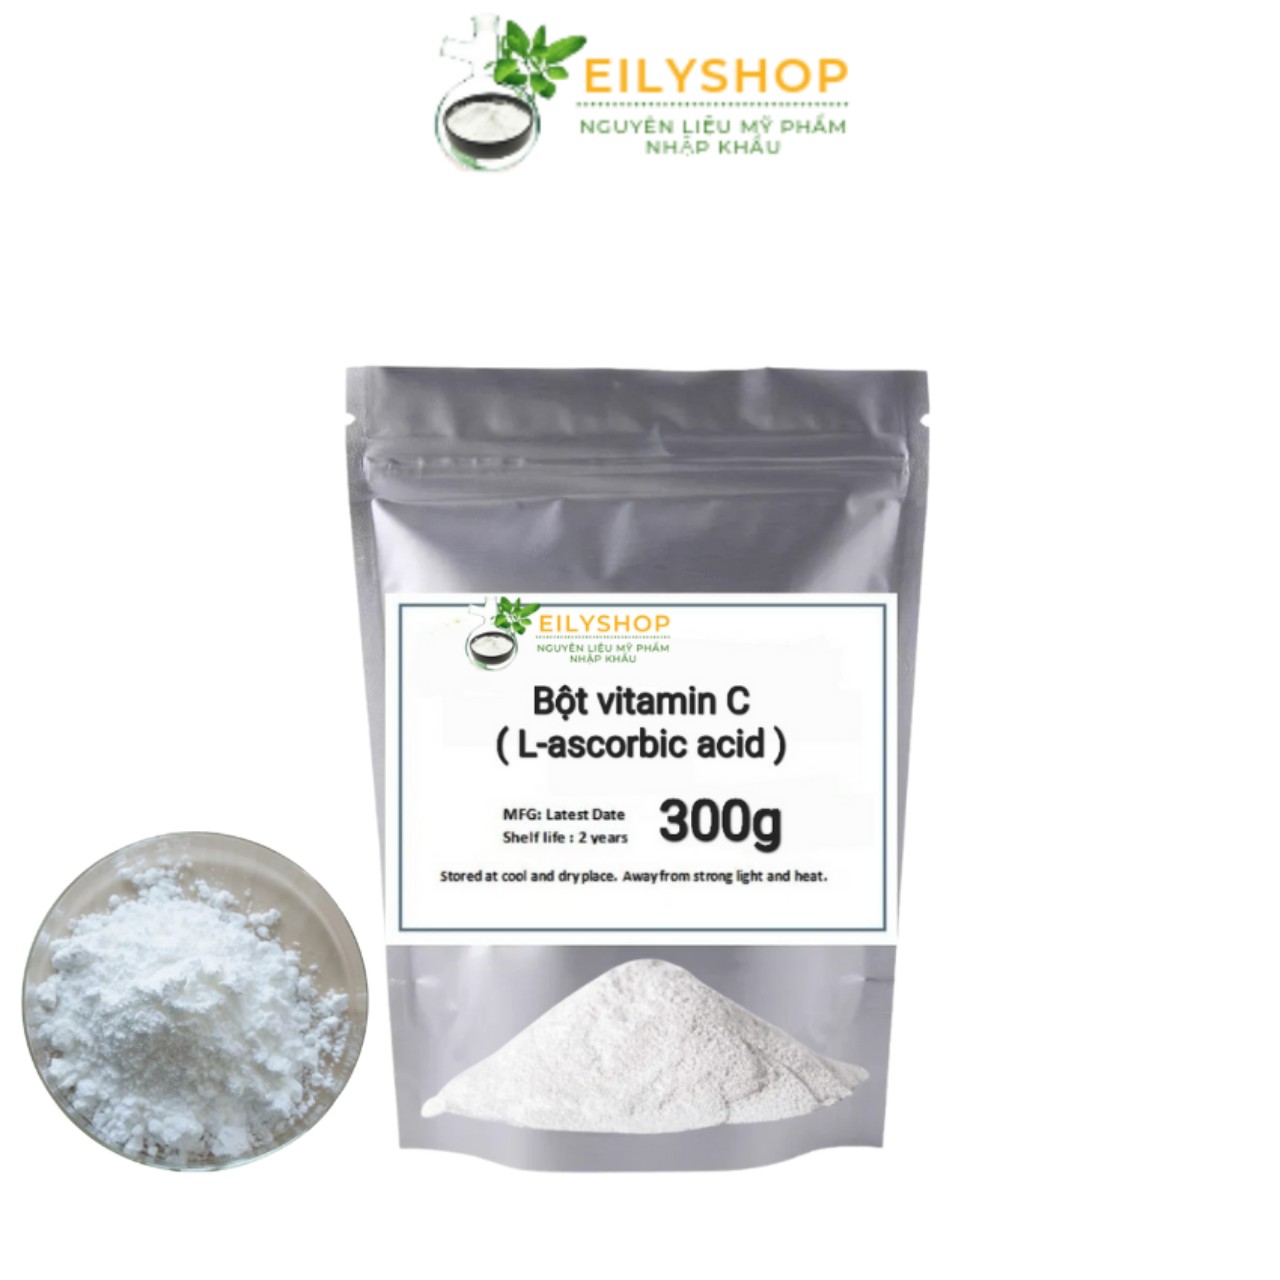 Bột vitamin C ( L-ascorbic acid )  - nguyên liệu mỹ phẩm Nhập Khẩu Eilyshop 500gr